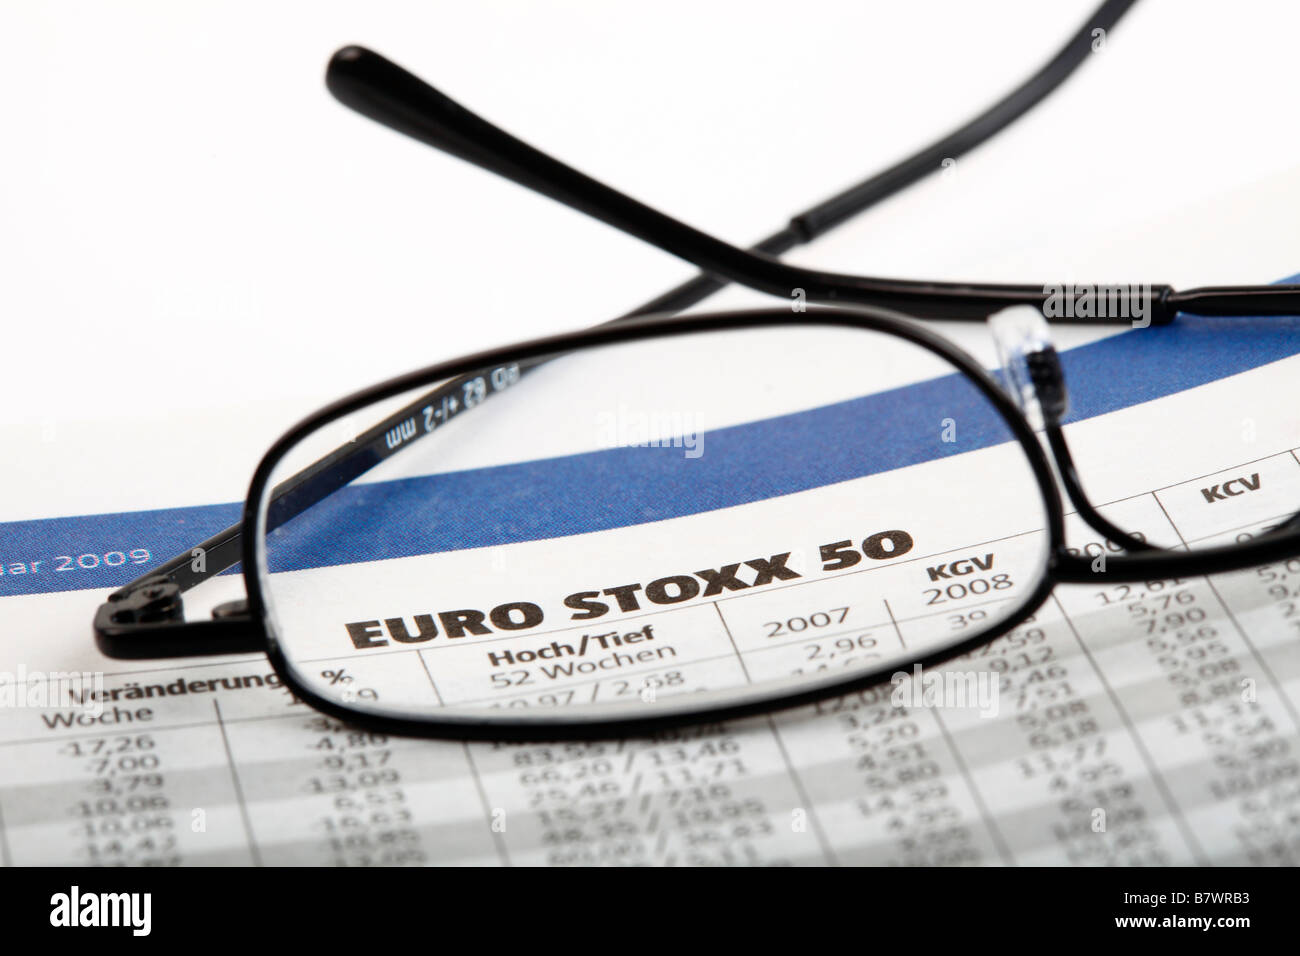 Euro Stoxx 50 Stock Photo